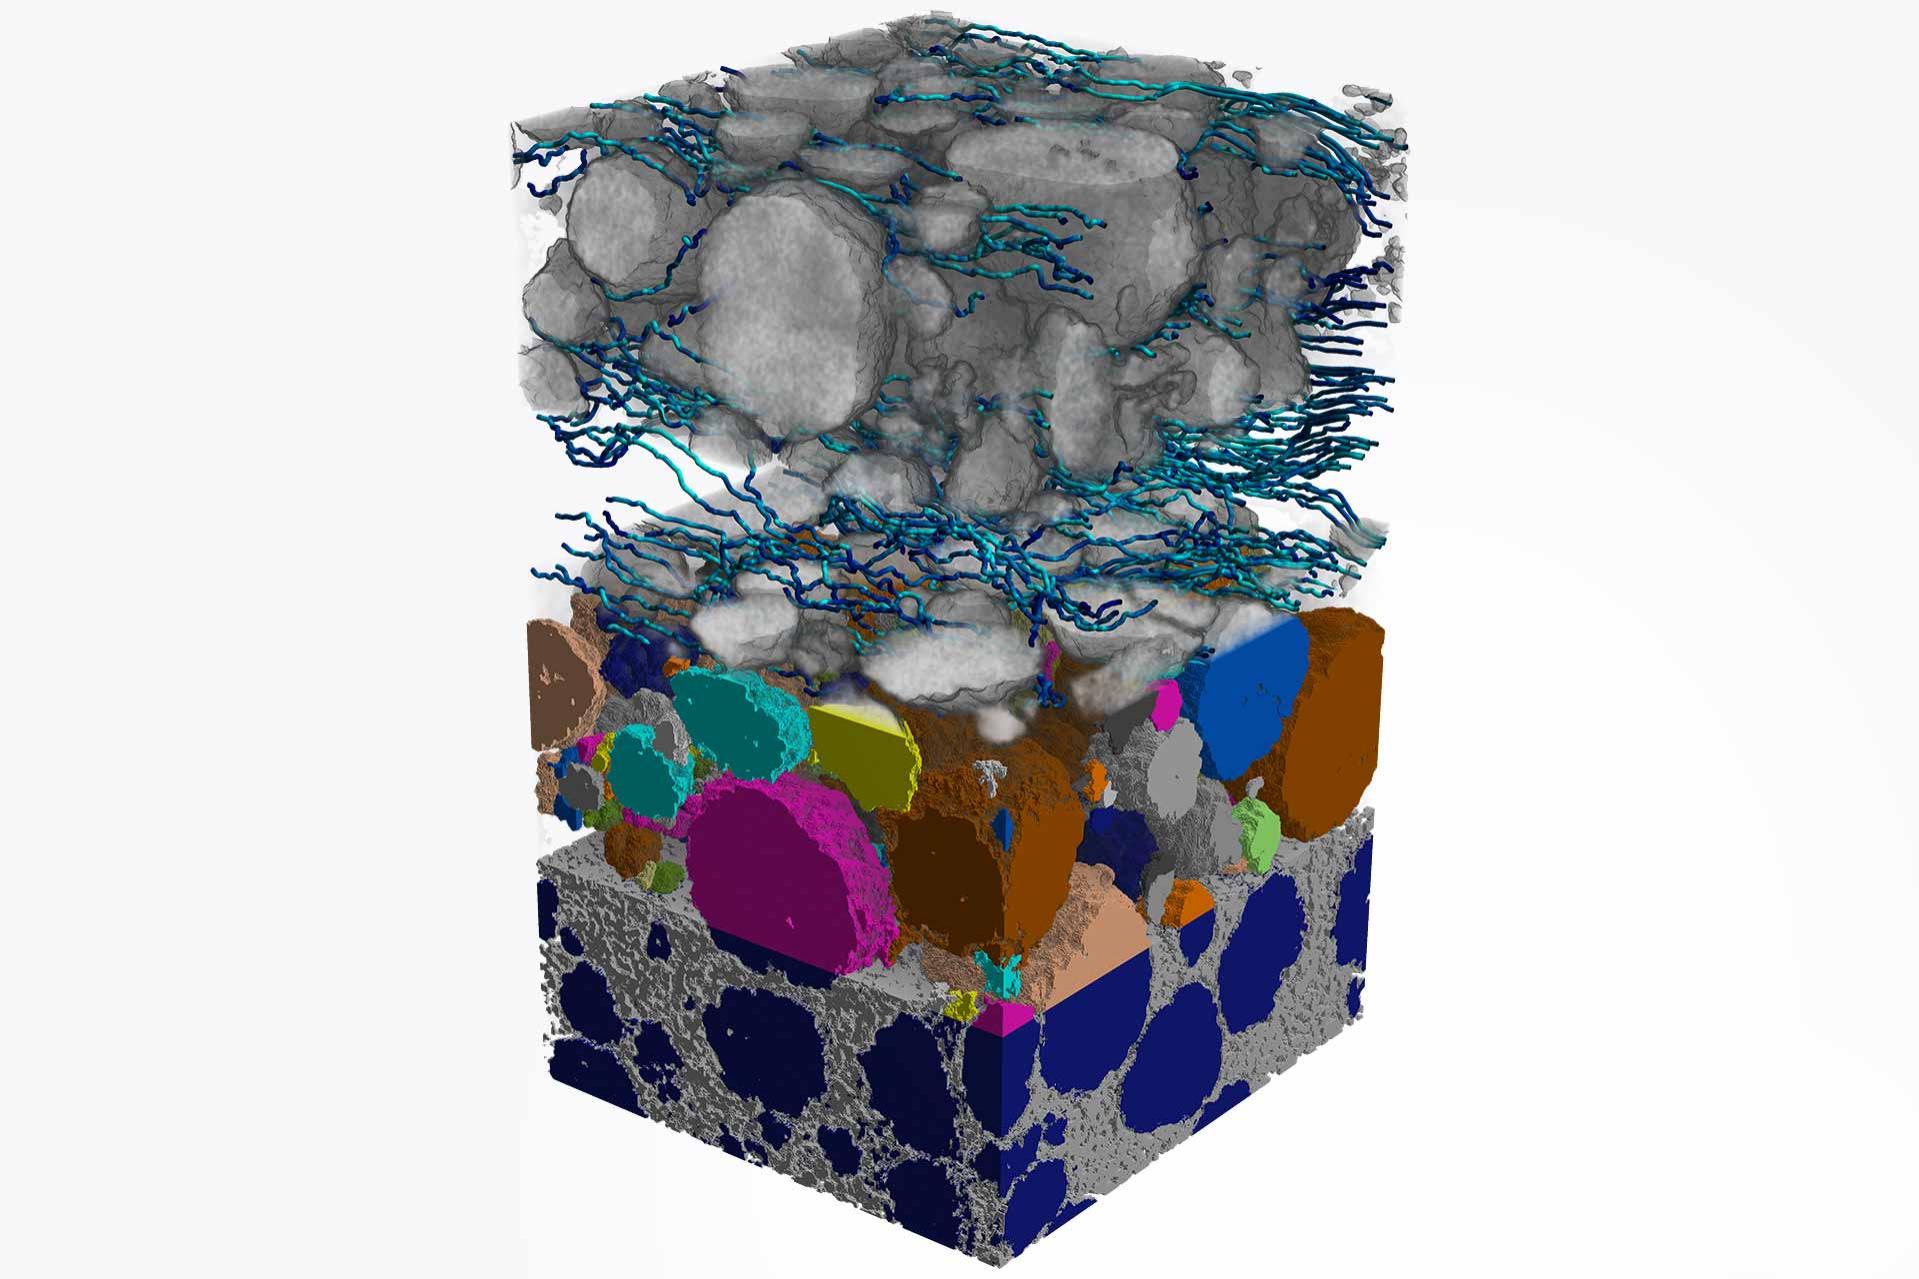 Imagerie par nanotomographie à rayons X 3D et simulation numérique de matériaux pour cartographier les comportements de diffusion